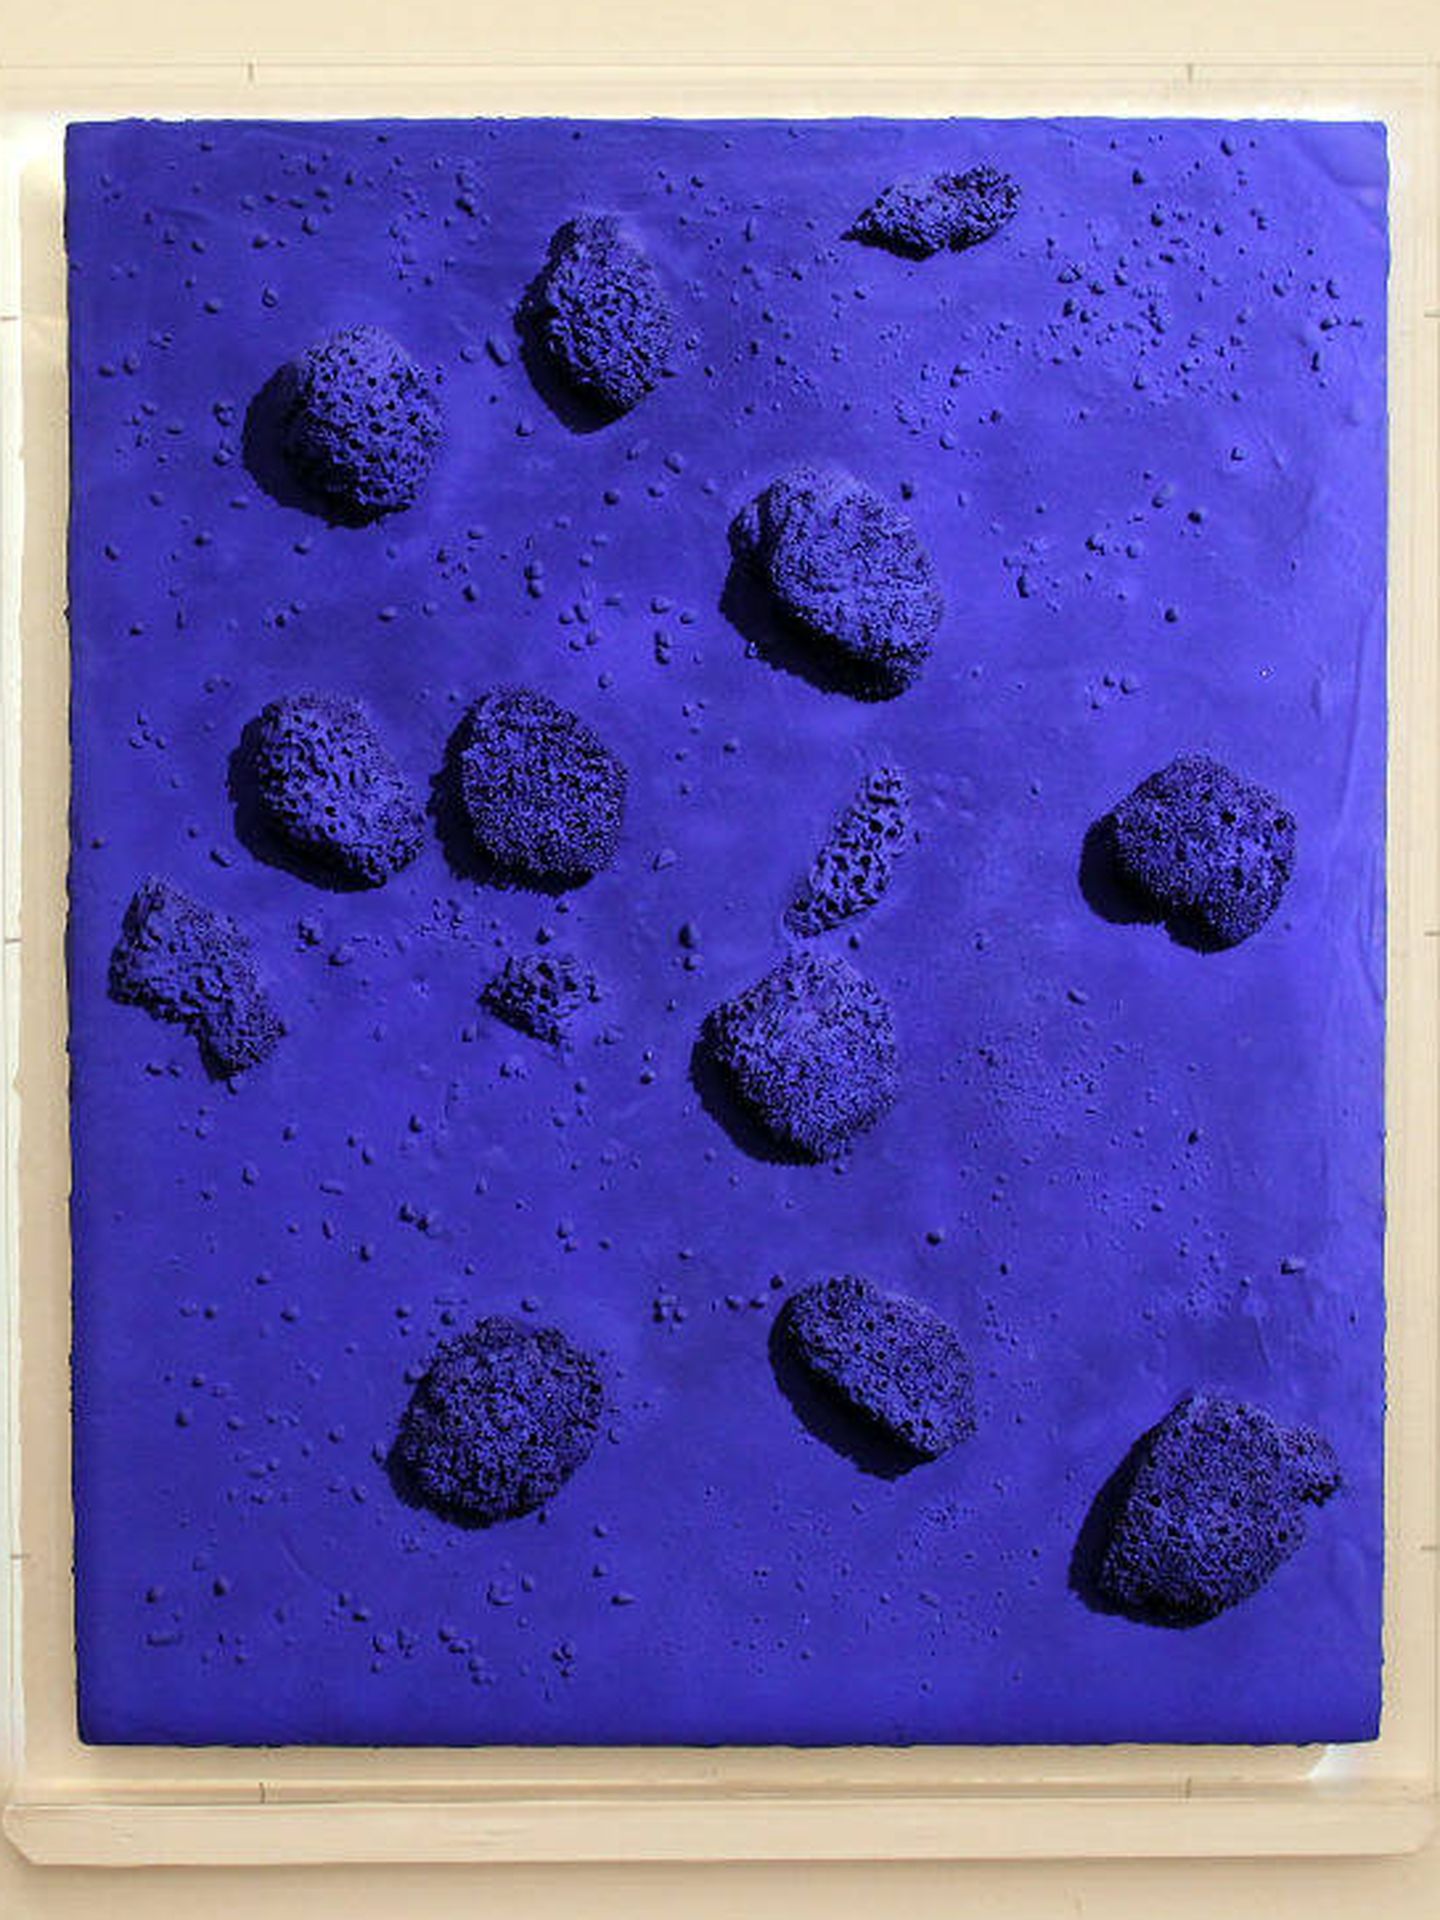 Cuadro de esponjas teñidas de azul Klein, obra de Yves Klein, expuesto en Londres en 2010. (Getty)